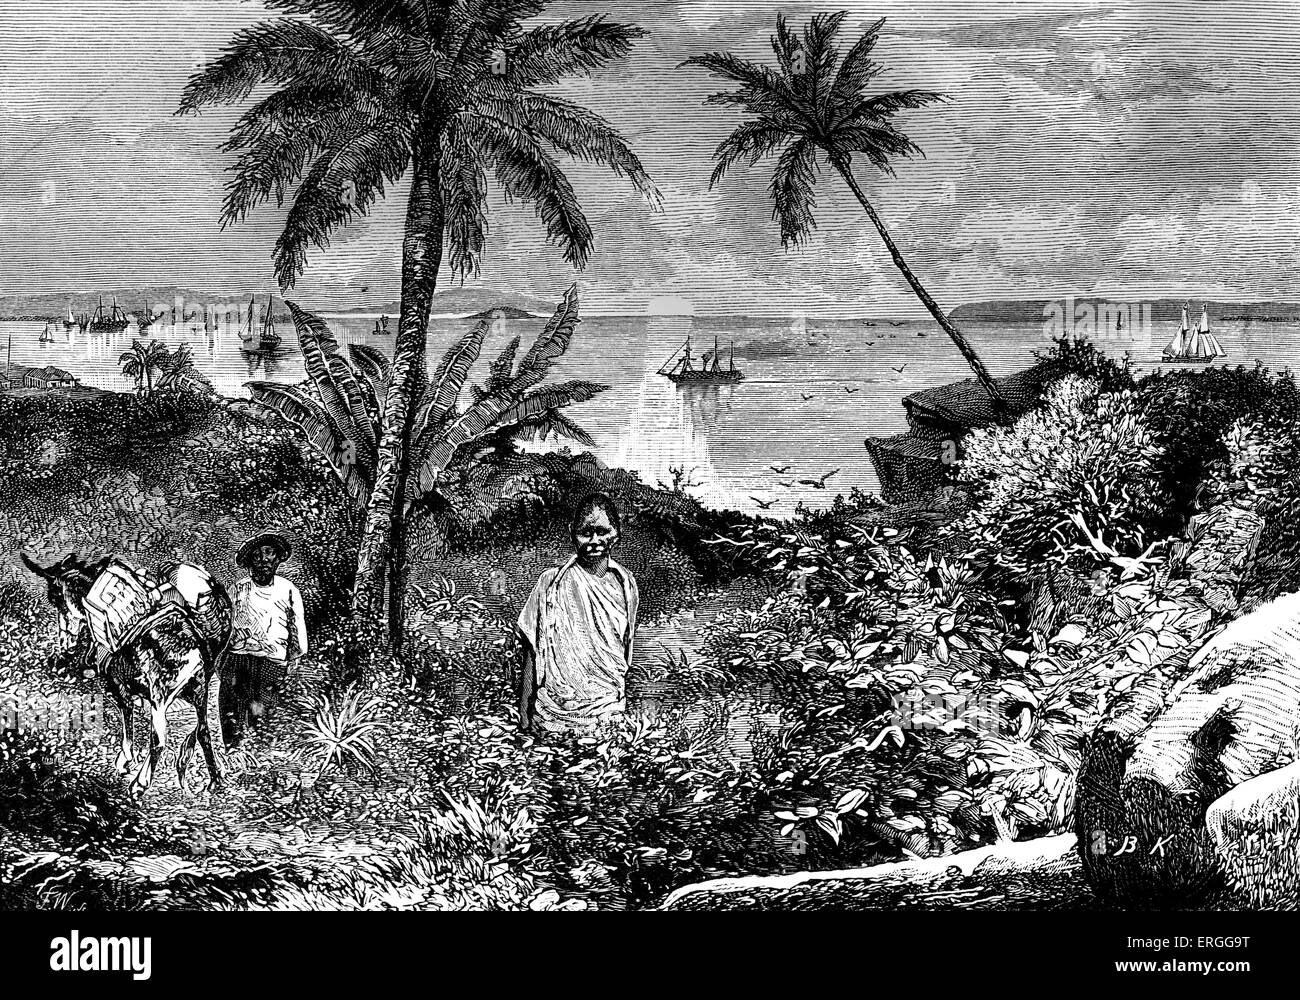 Die Bucht von Panama im Golf von Panama, Mann mit Maultier c. 1880 s.  Illustration von Bohuslav Kroupa (1838-1912) Stockfoto